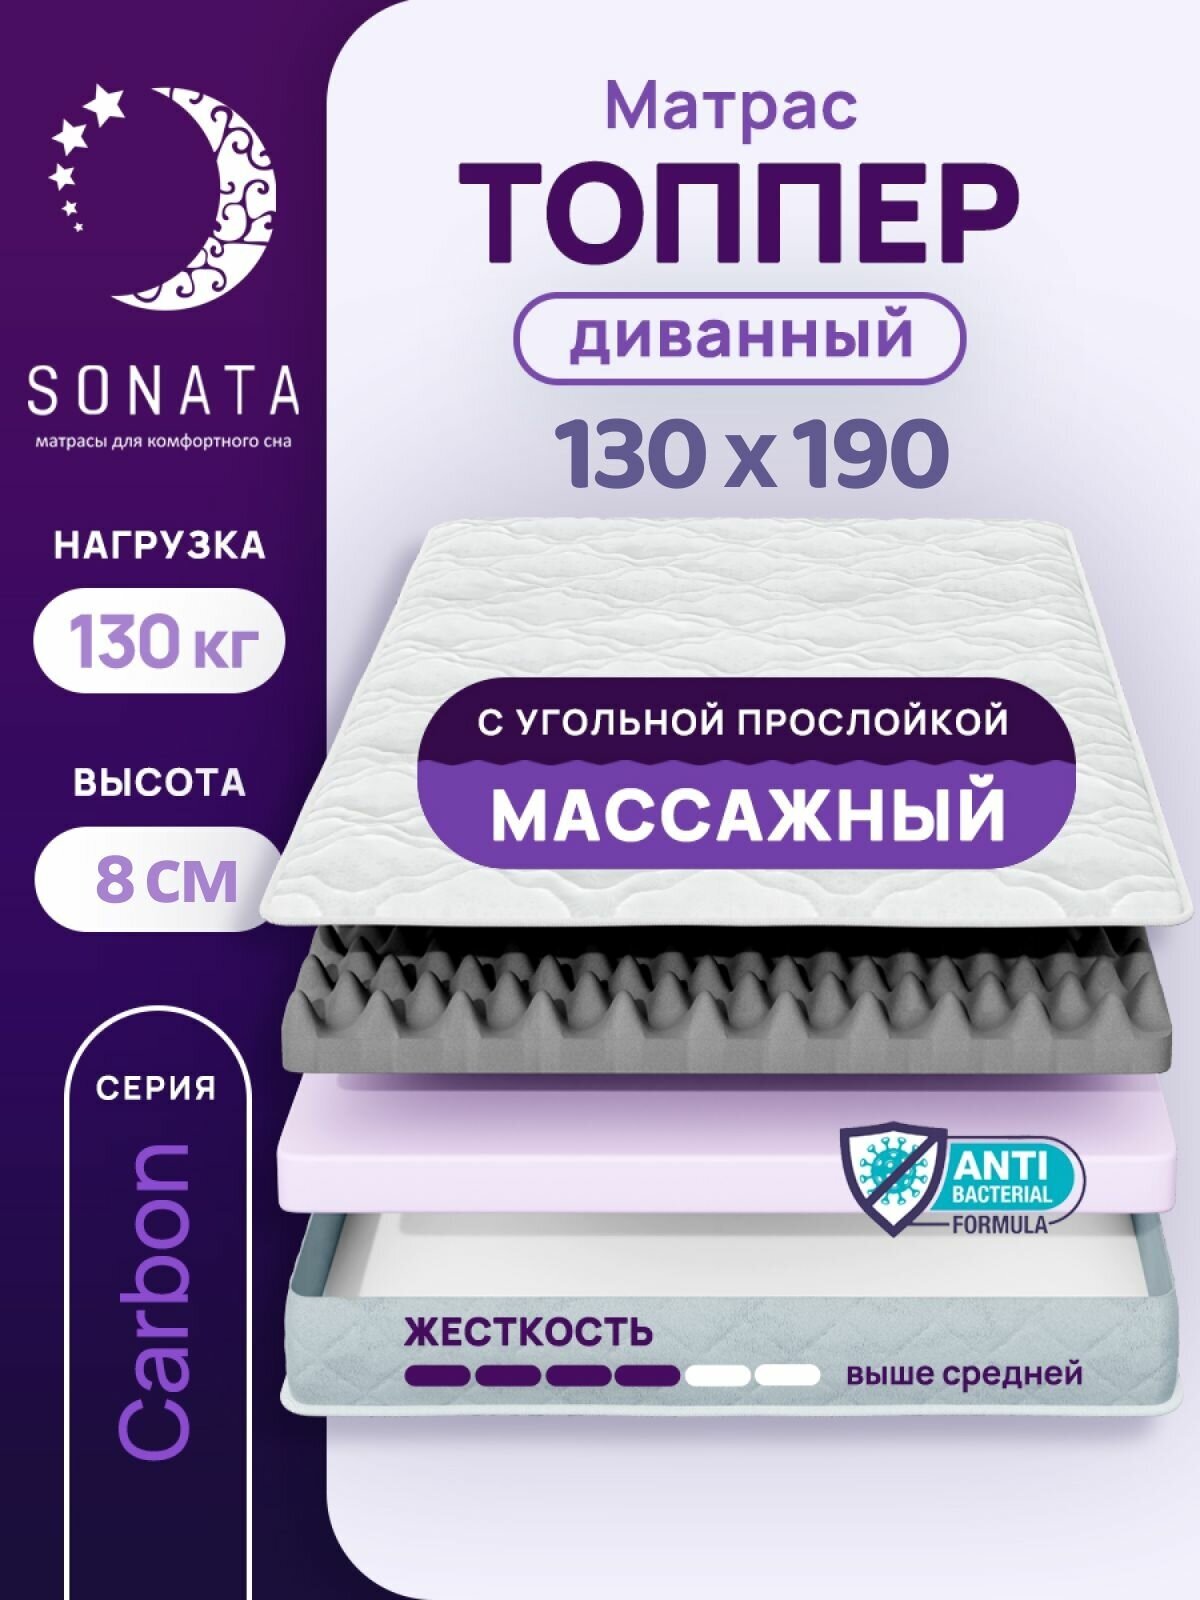 Топпер матрас 130х190 см SONATA, ортопедический, беспружинный, односпальный, тонкий матрац для дивана, кровати, высота 8 см с массажным эффектом